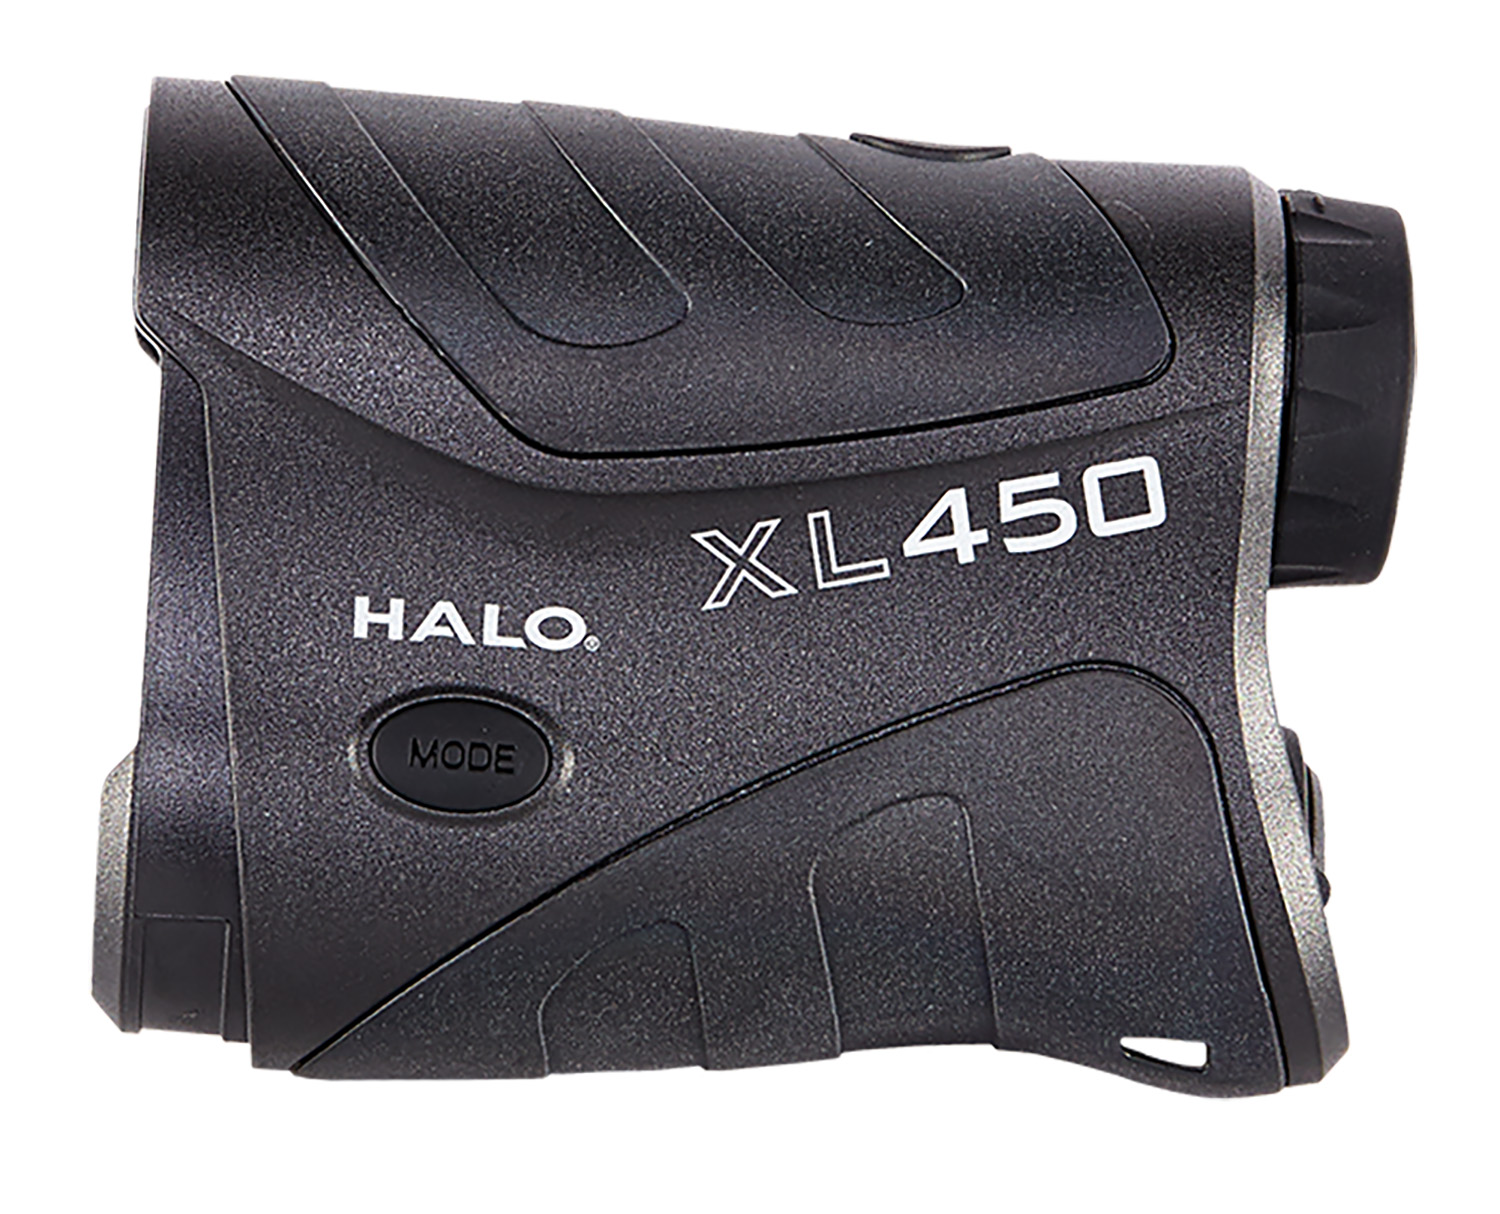 Wildgame Innovations XL450-7 Halo Laser Range Finder, 450Yd, 4x